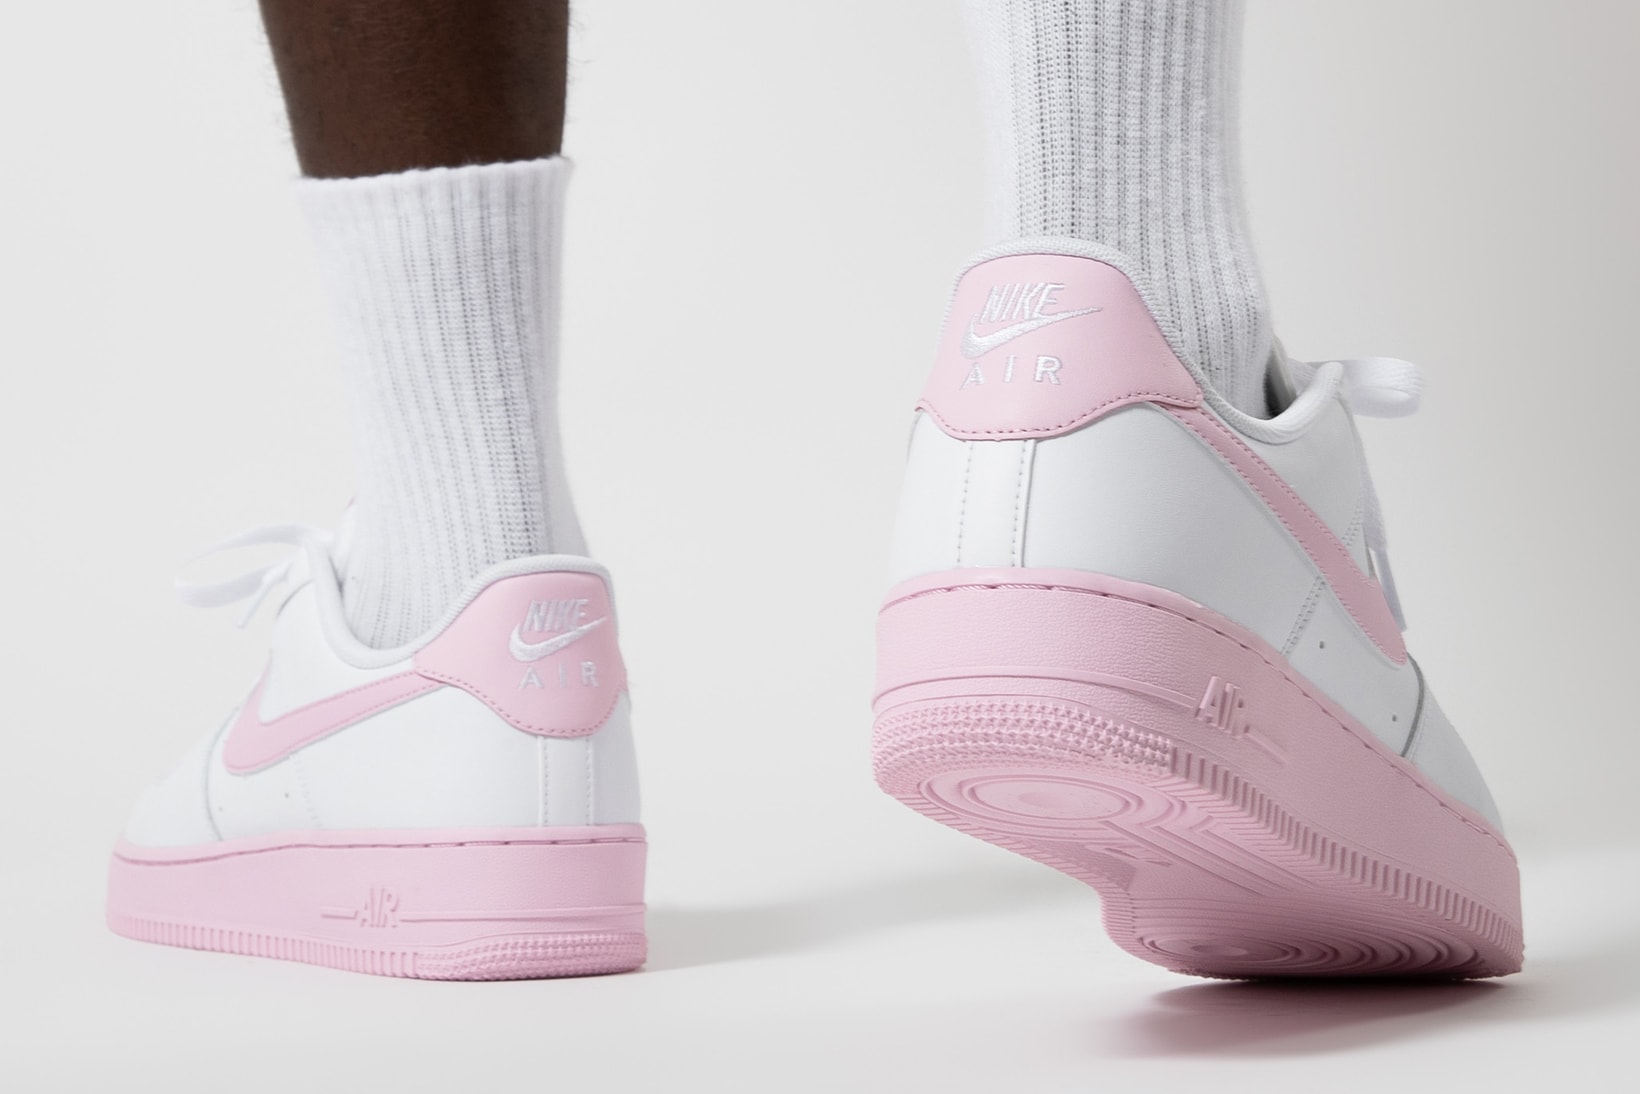 nike air force 1 07 sneakers pink white colorway shoes footwear sneakerhead